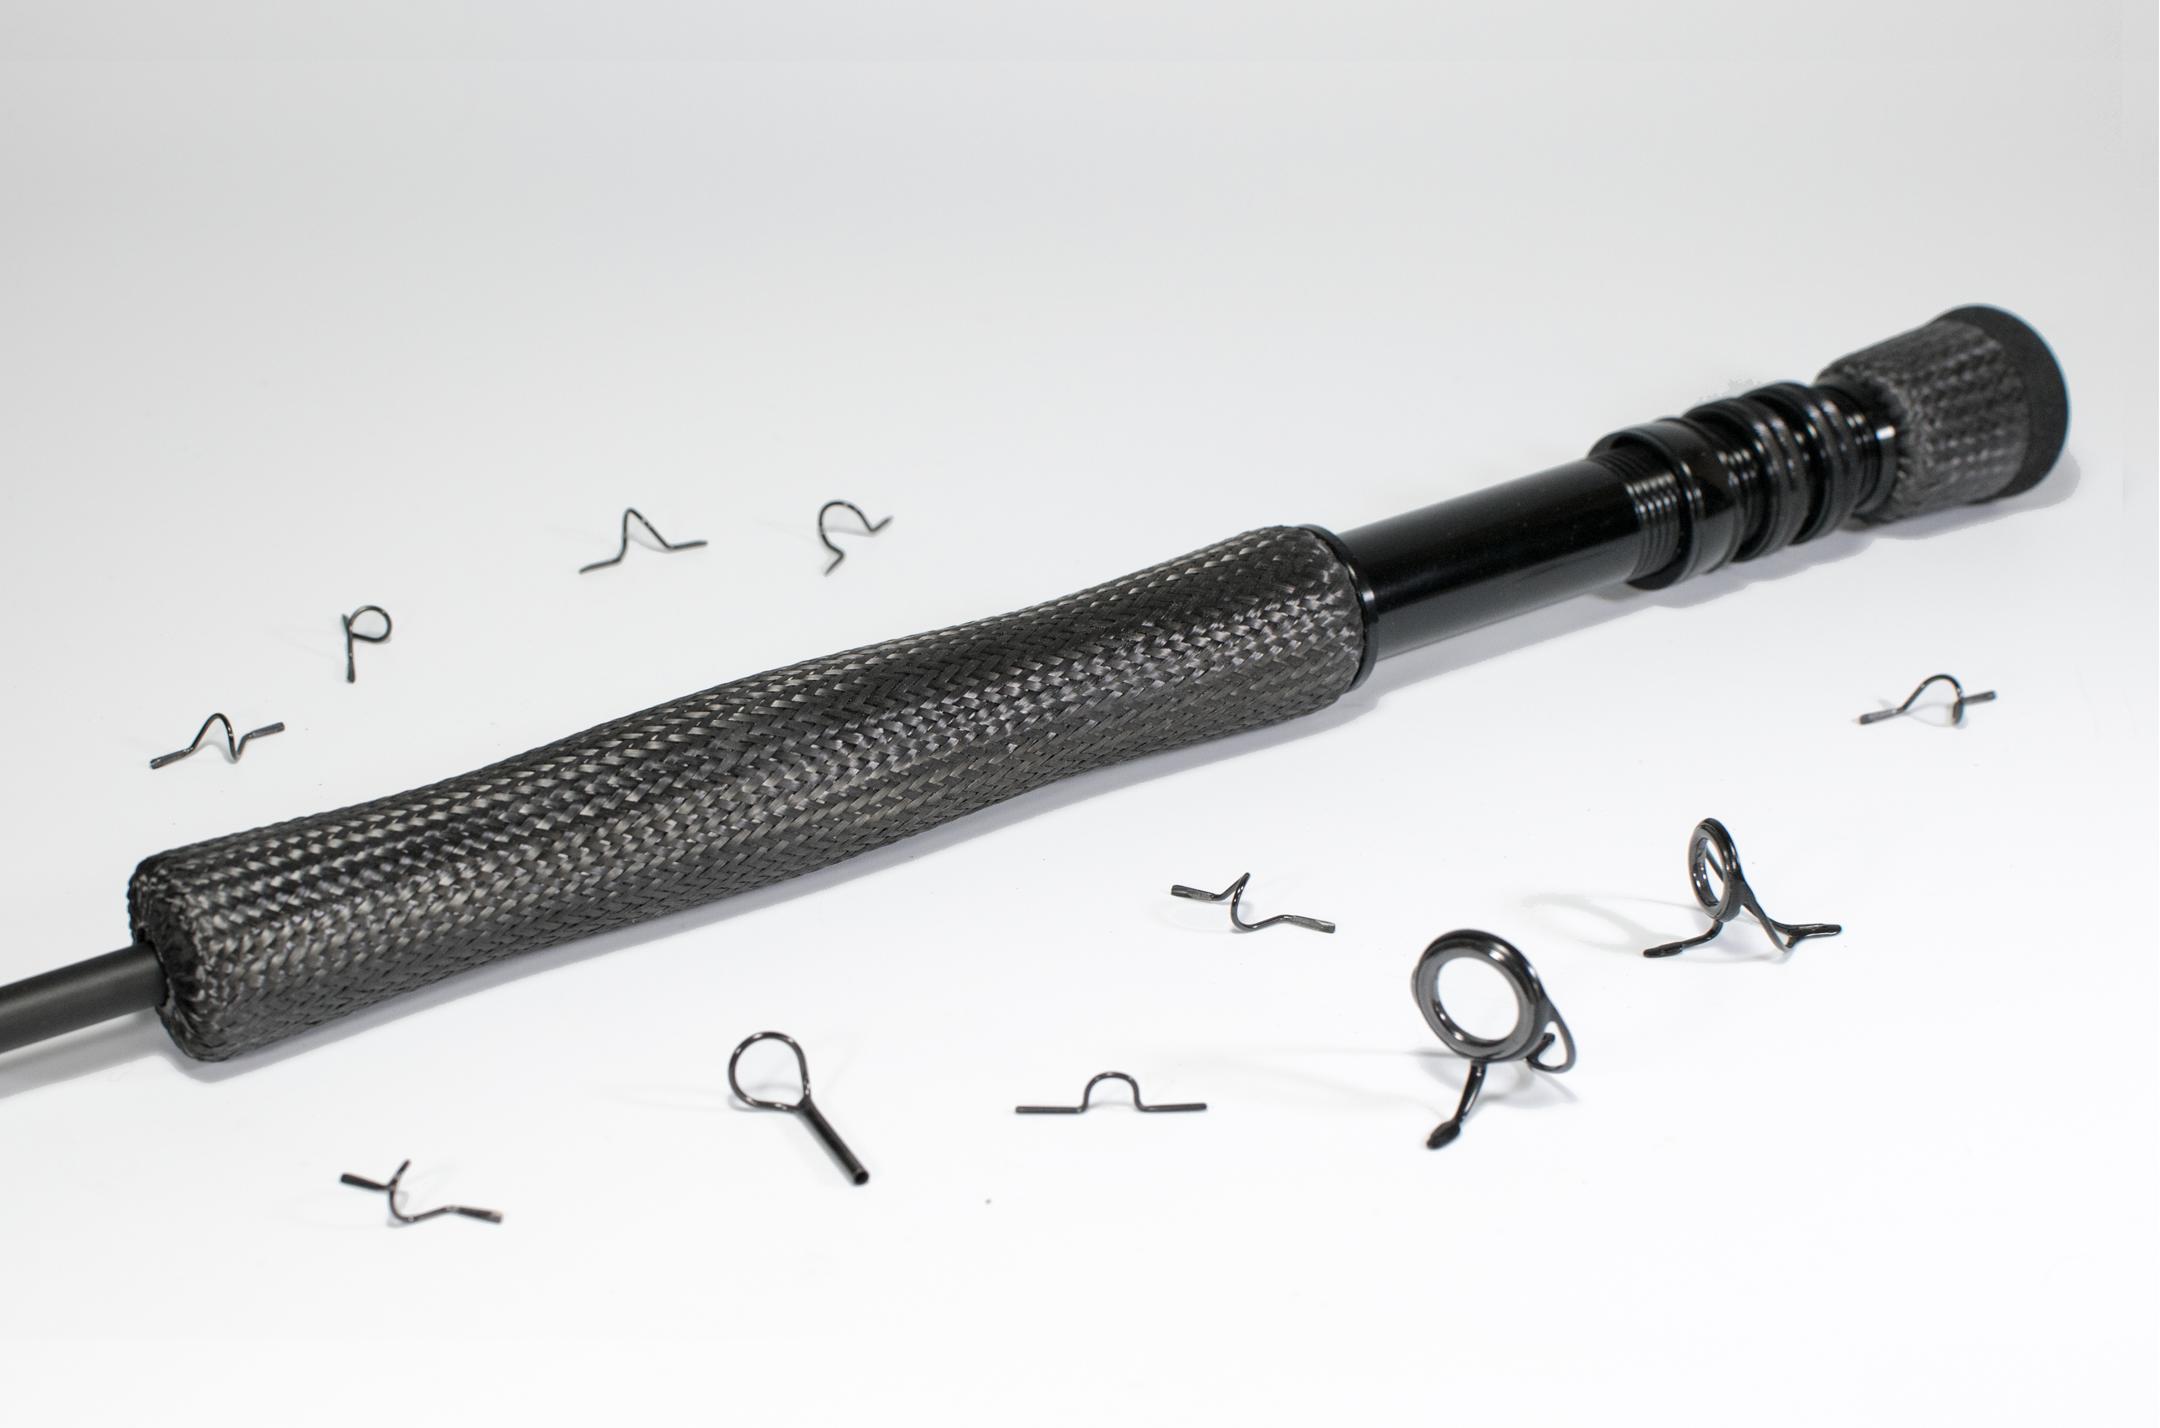 Predator 'all black' build kit for fly rods #8-12